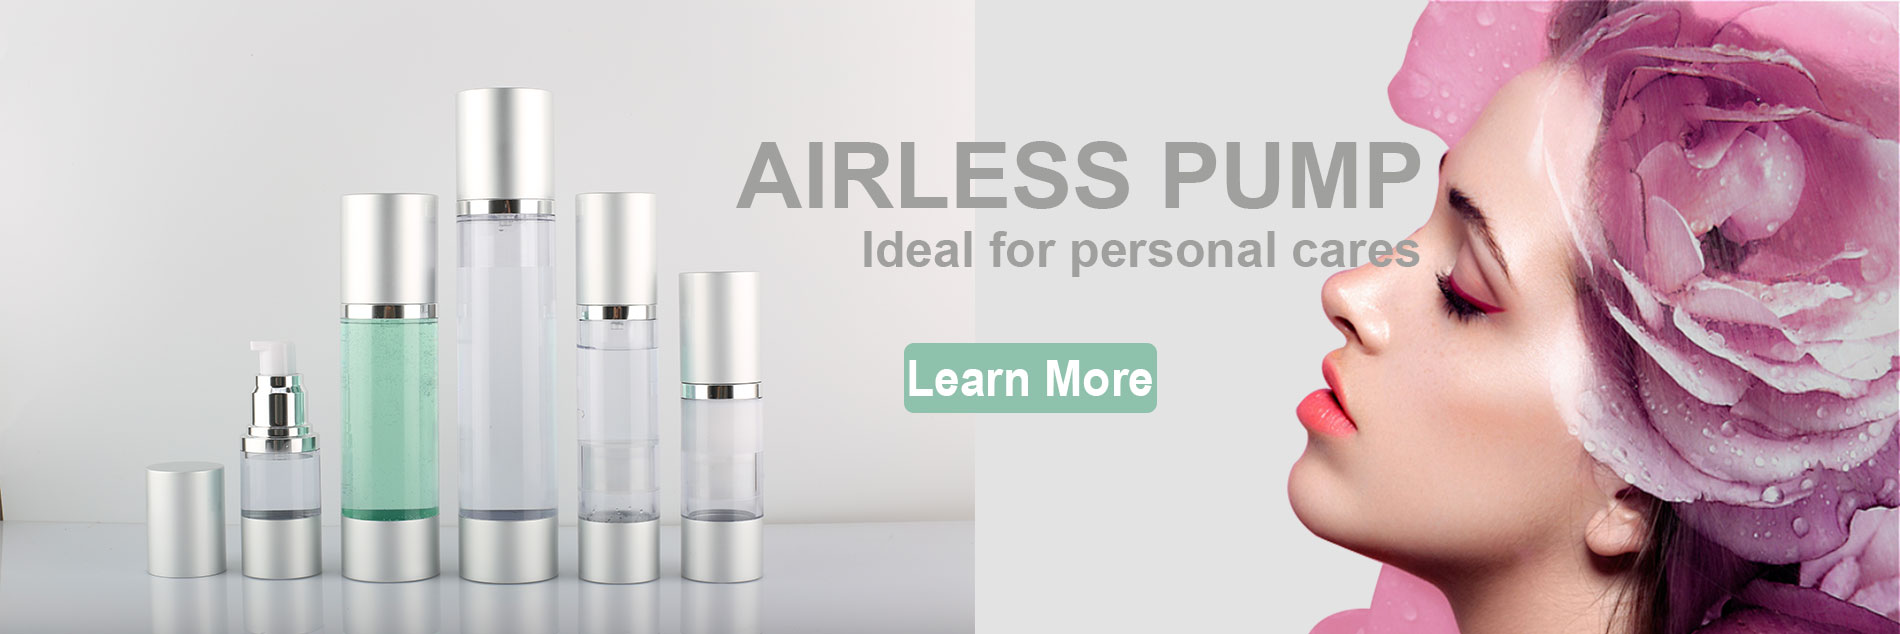 airless pump bottle web banner